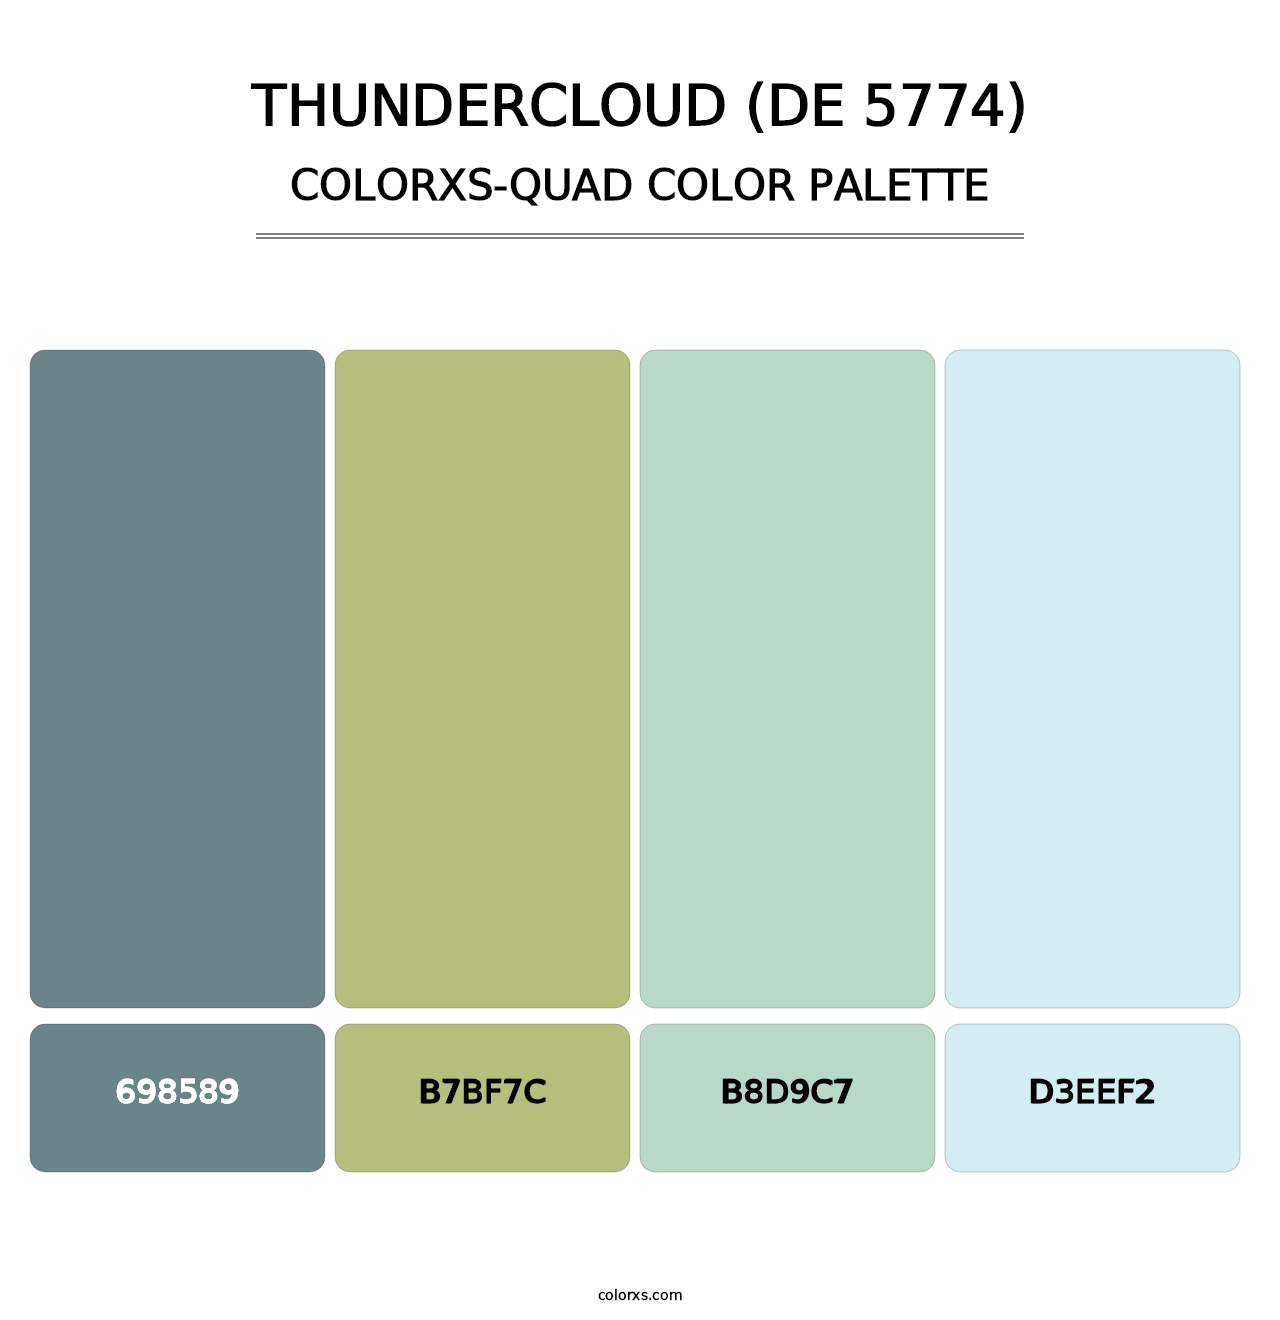 Thundercloud (DE 5774) - Colorxs Quad Palette